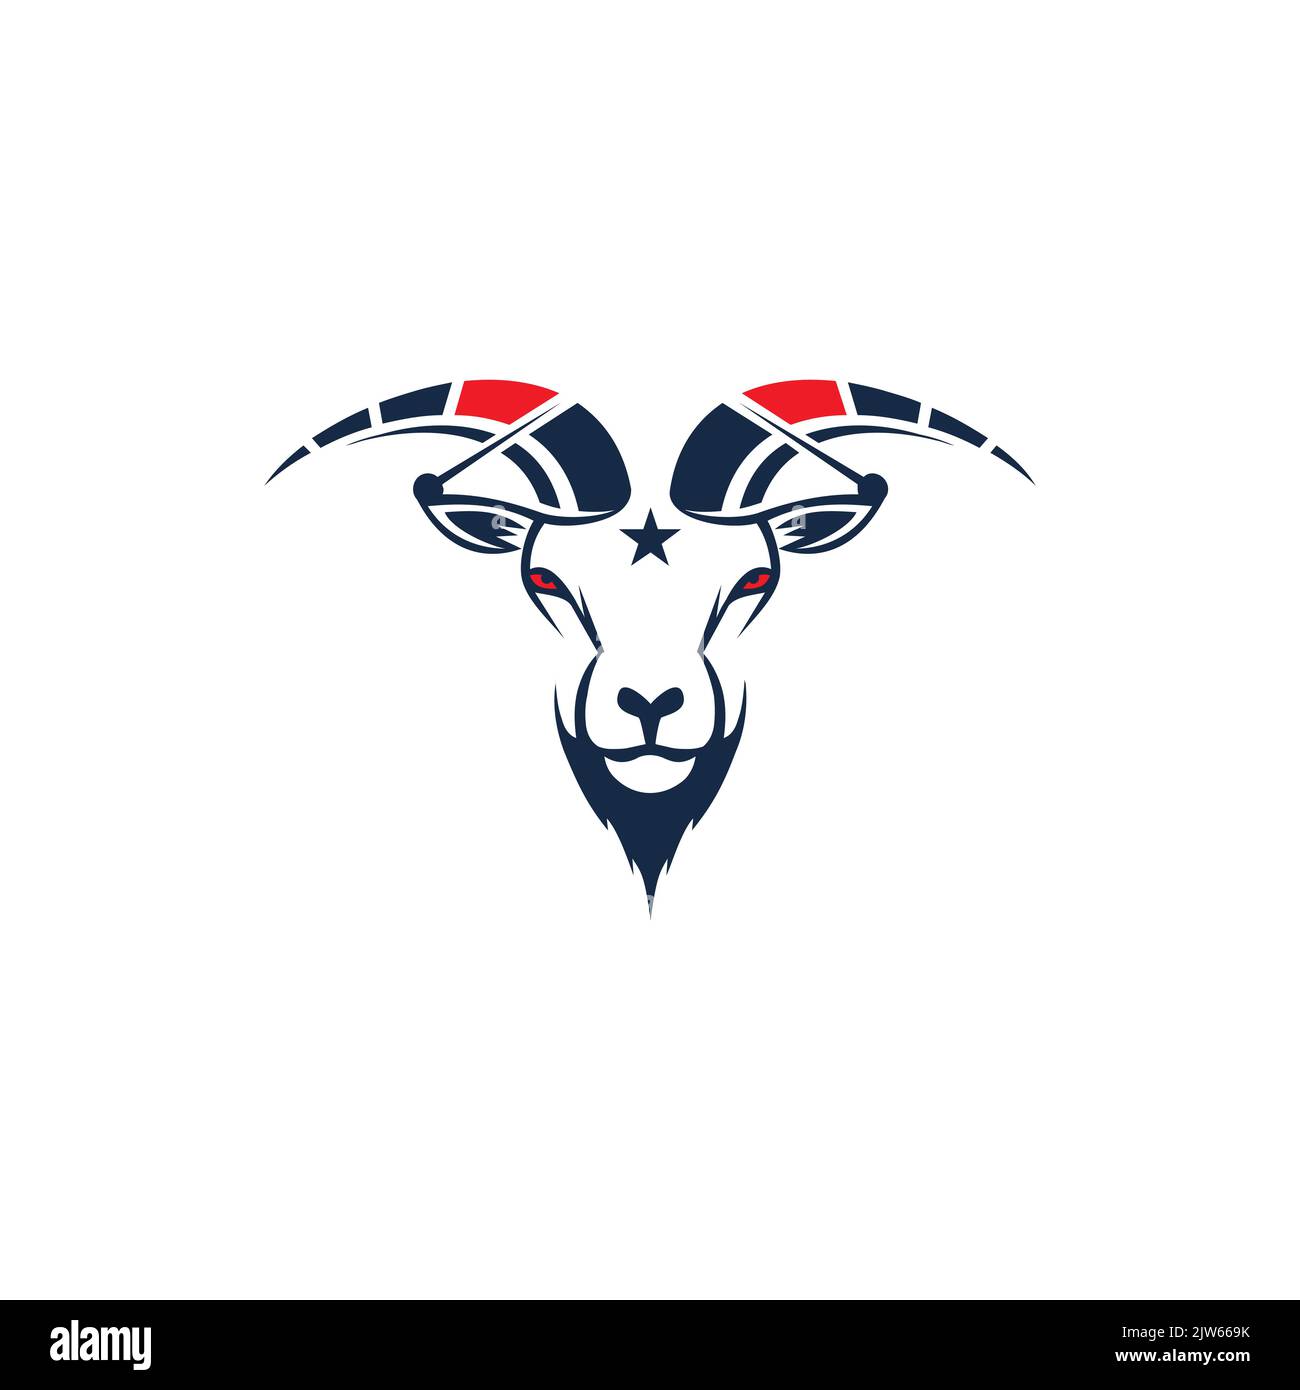 speed goat star logo Stock Vector